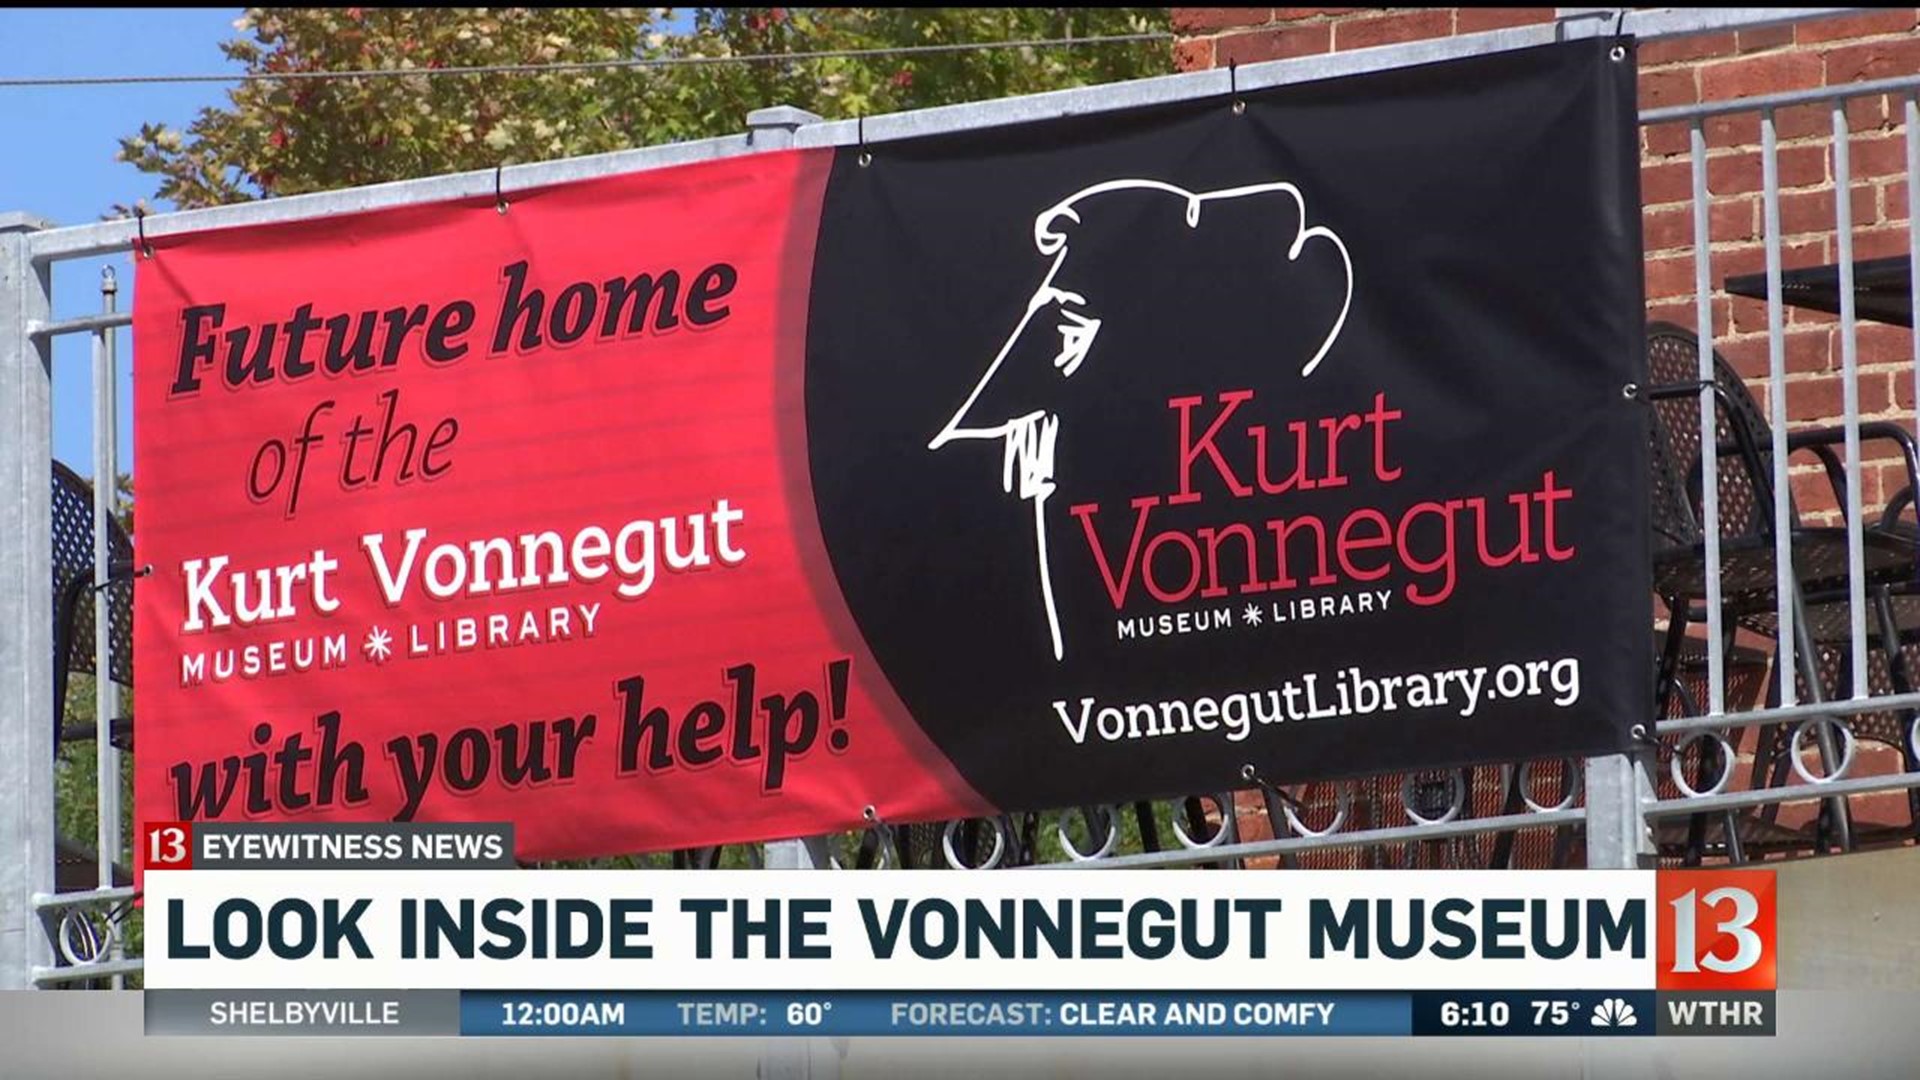 Look inside the Vonnegut Museum